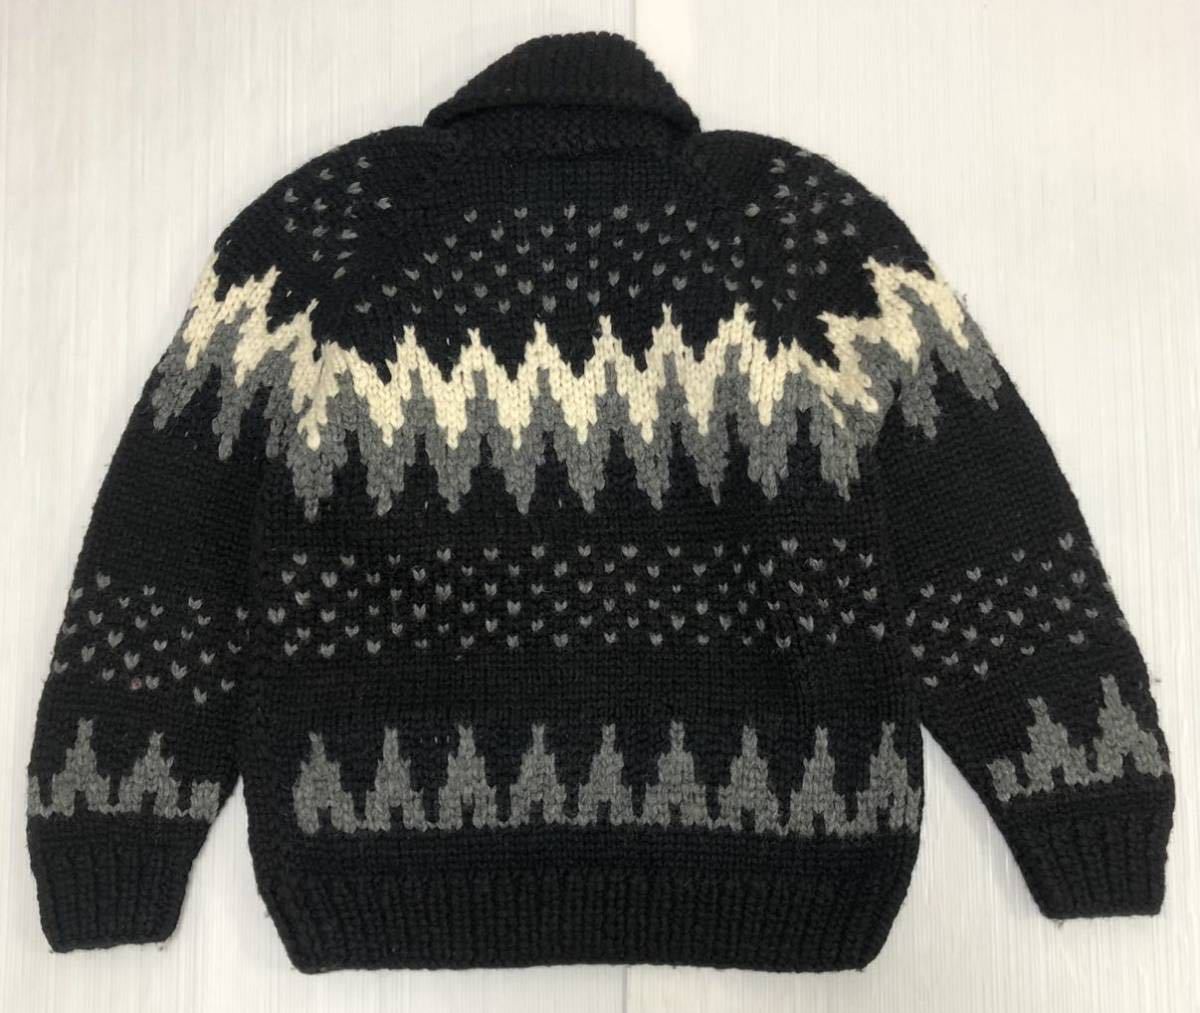 # KANATA kana ta# прекрасное качество Canada производства neitib снег рисунок плетеный рисунок шерсть кушетка n вязаный свитер оттенок черного 